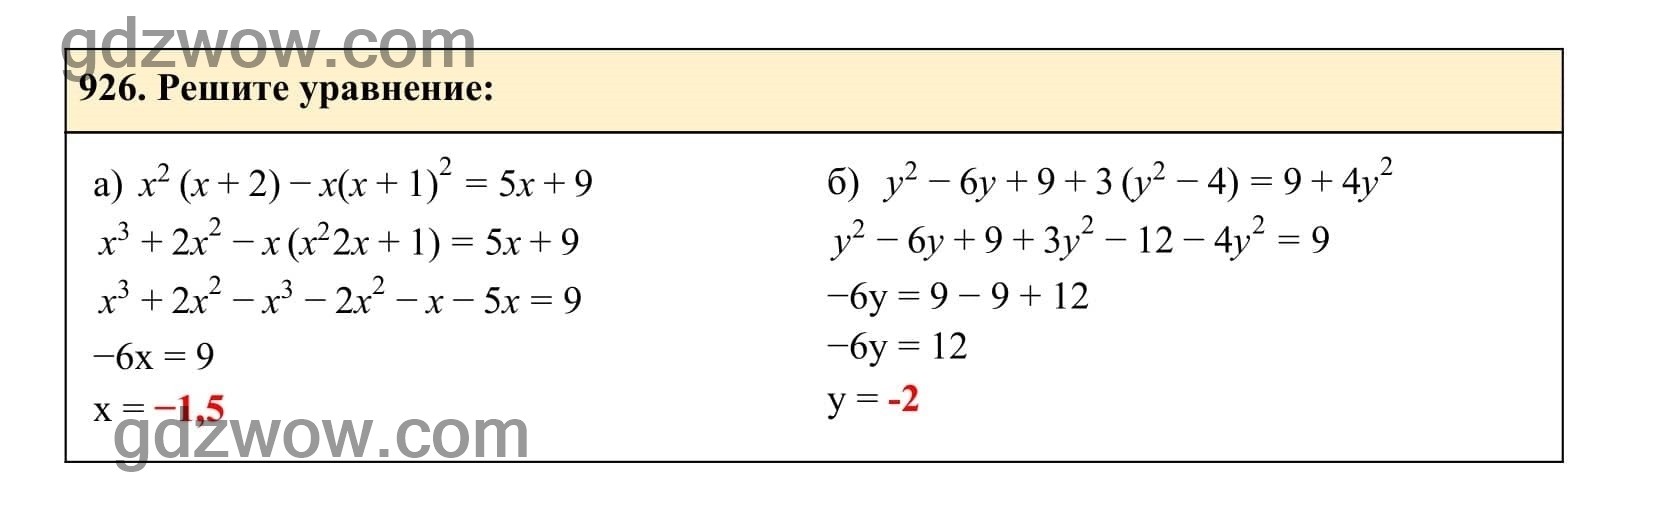 Упражнение 926 - ГДЗ по Алгебре 7 класс Учебник Макарычев (решебник) - GDZwow